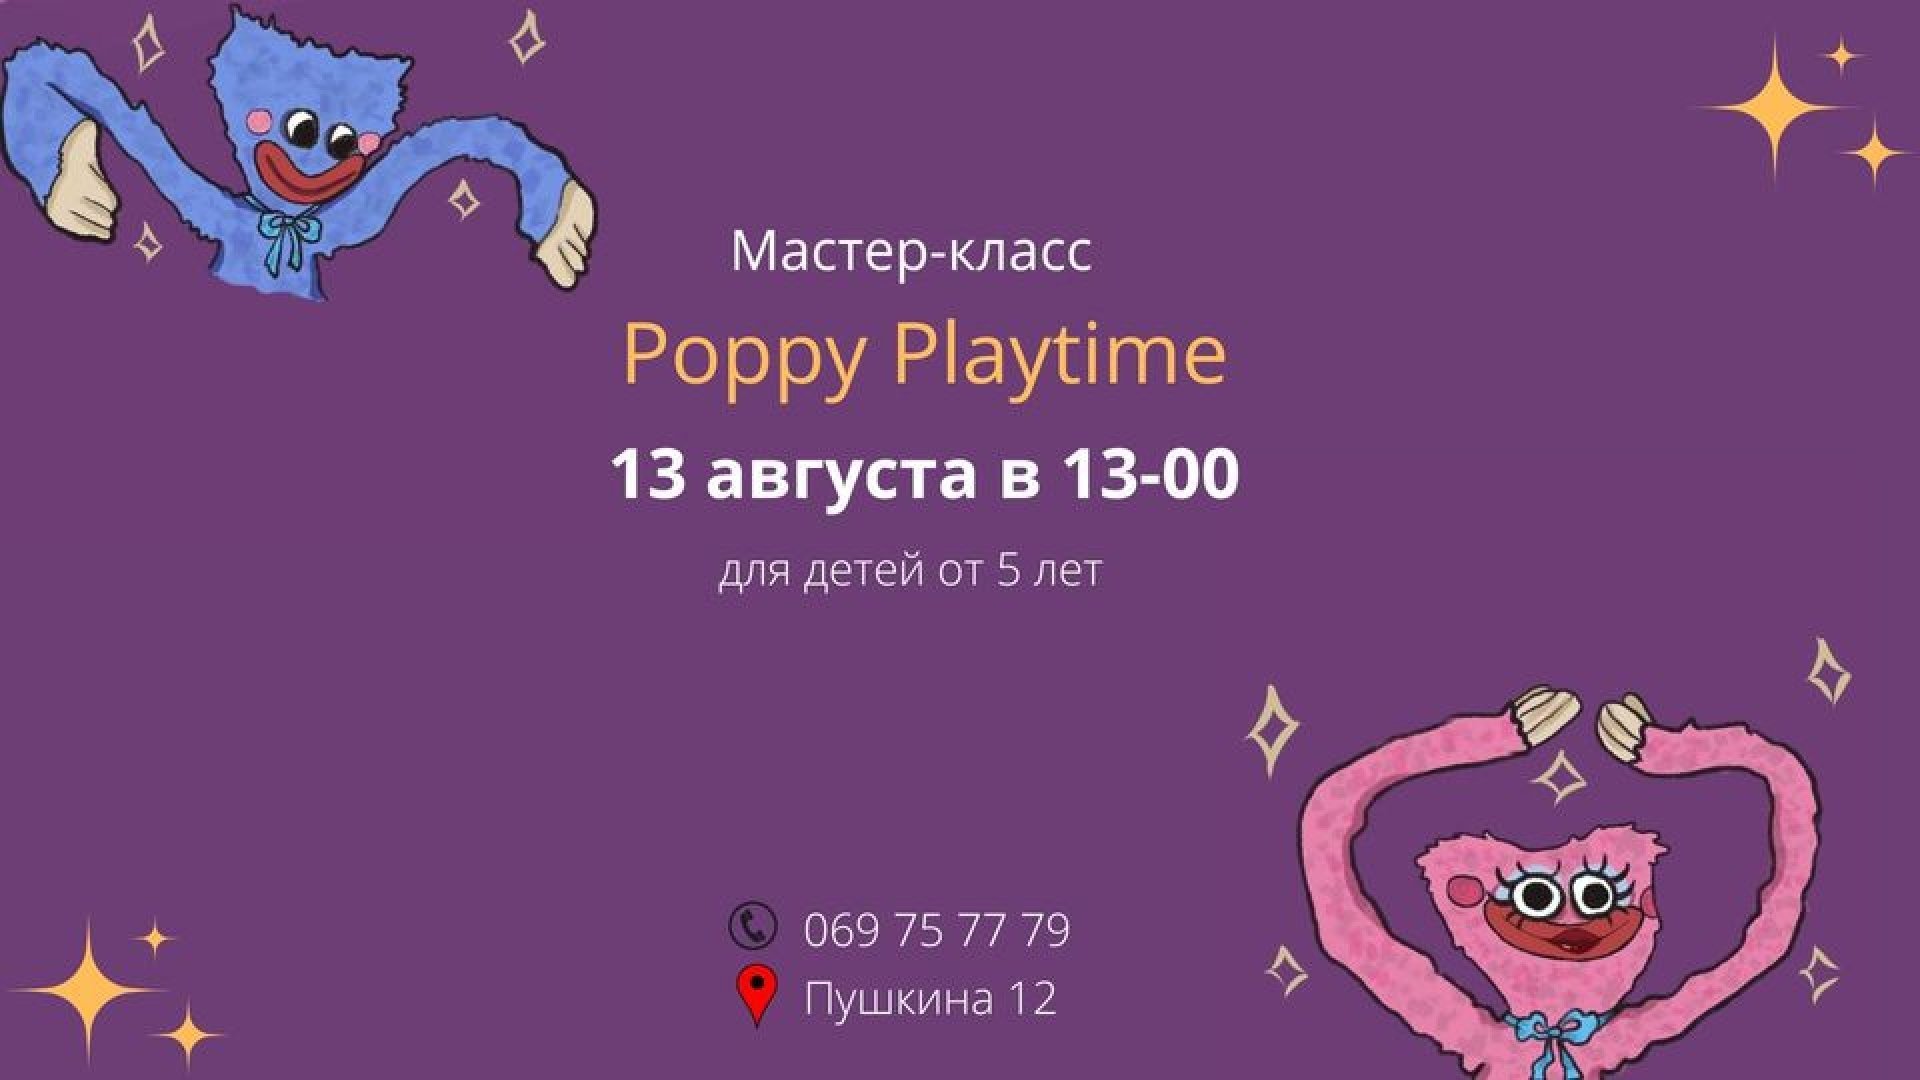 Мастер-класс "Poppy Playtime"